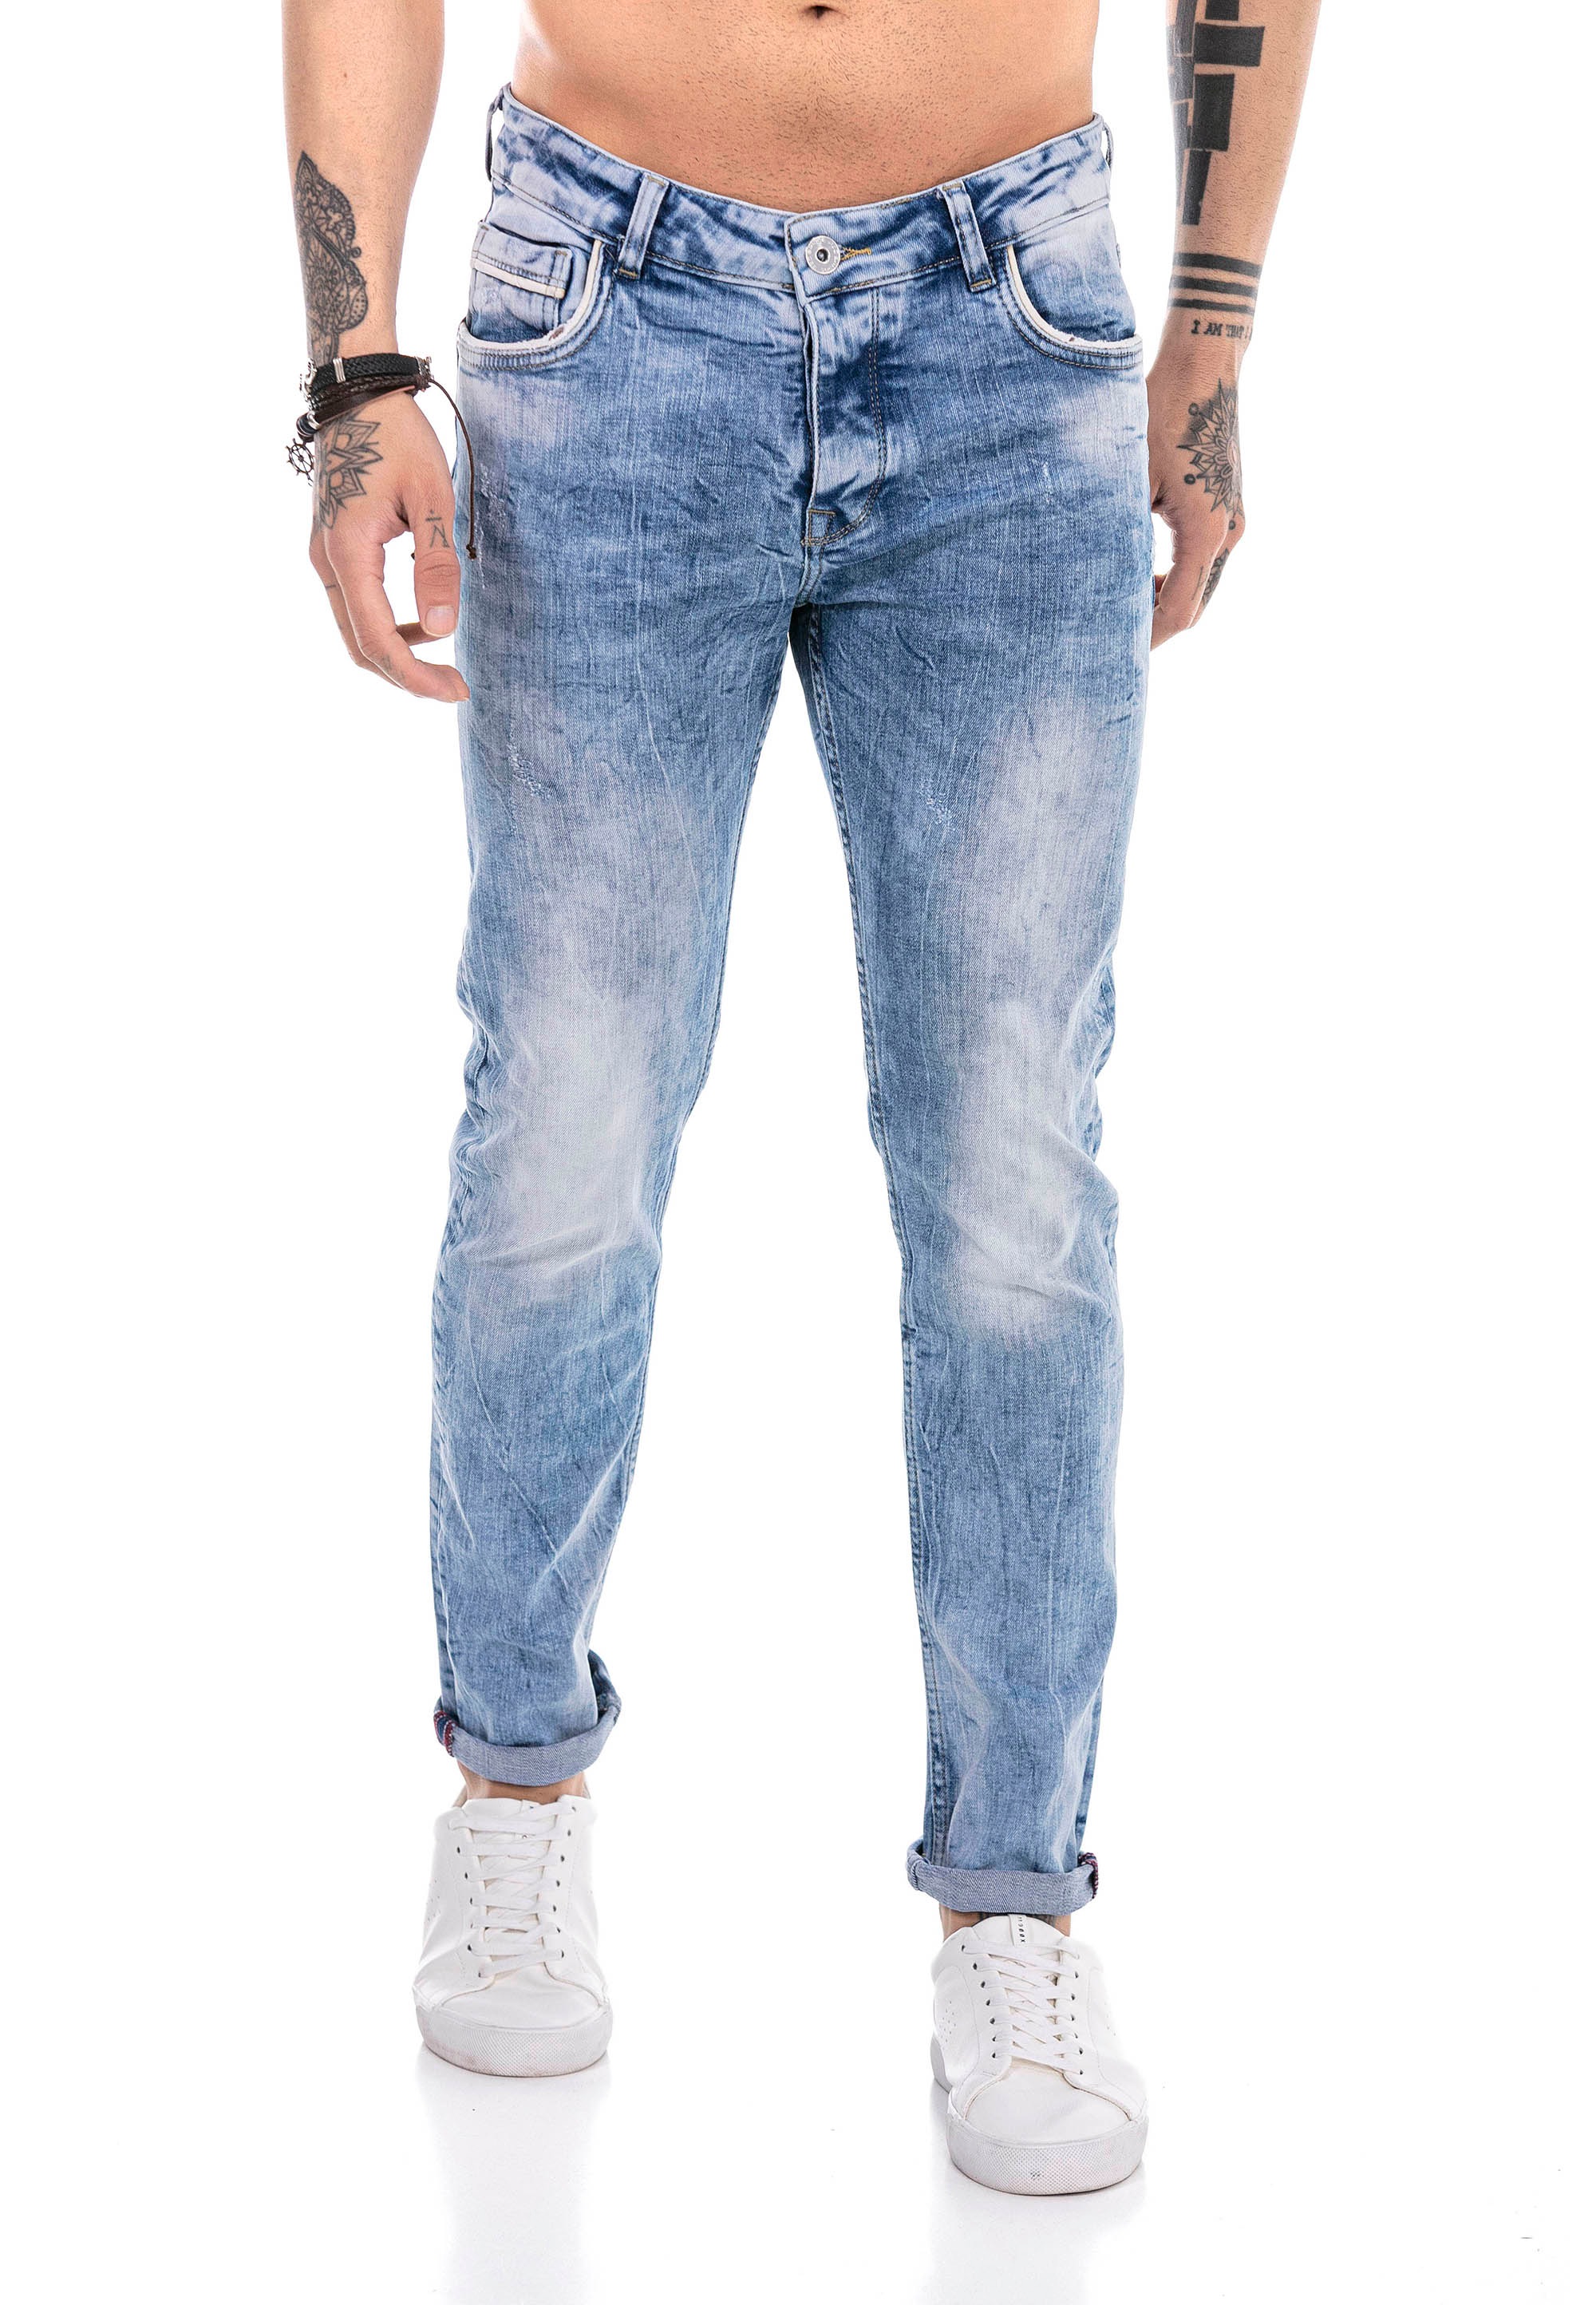 RedBridge Bequeme Jeans »Sutton Coldfield«, im klassischen 5-Pocket-Design